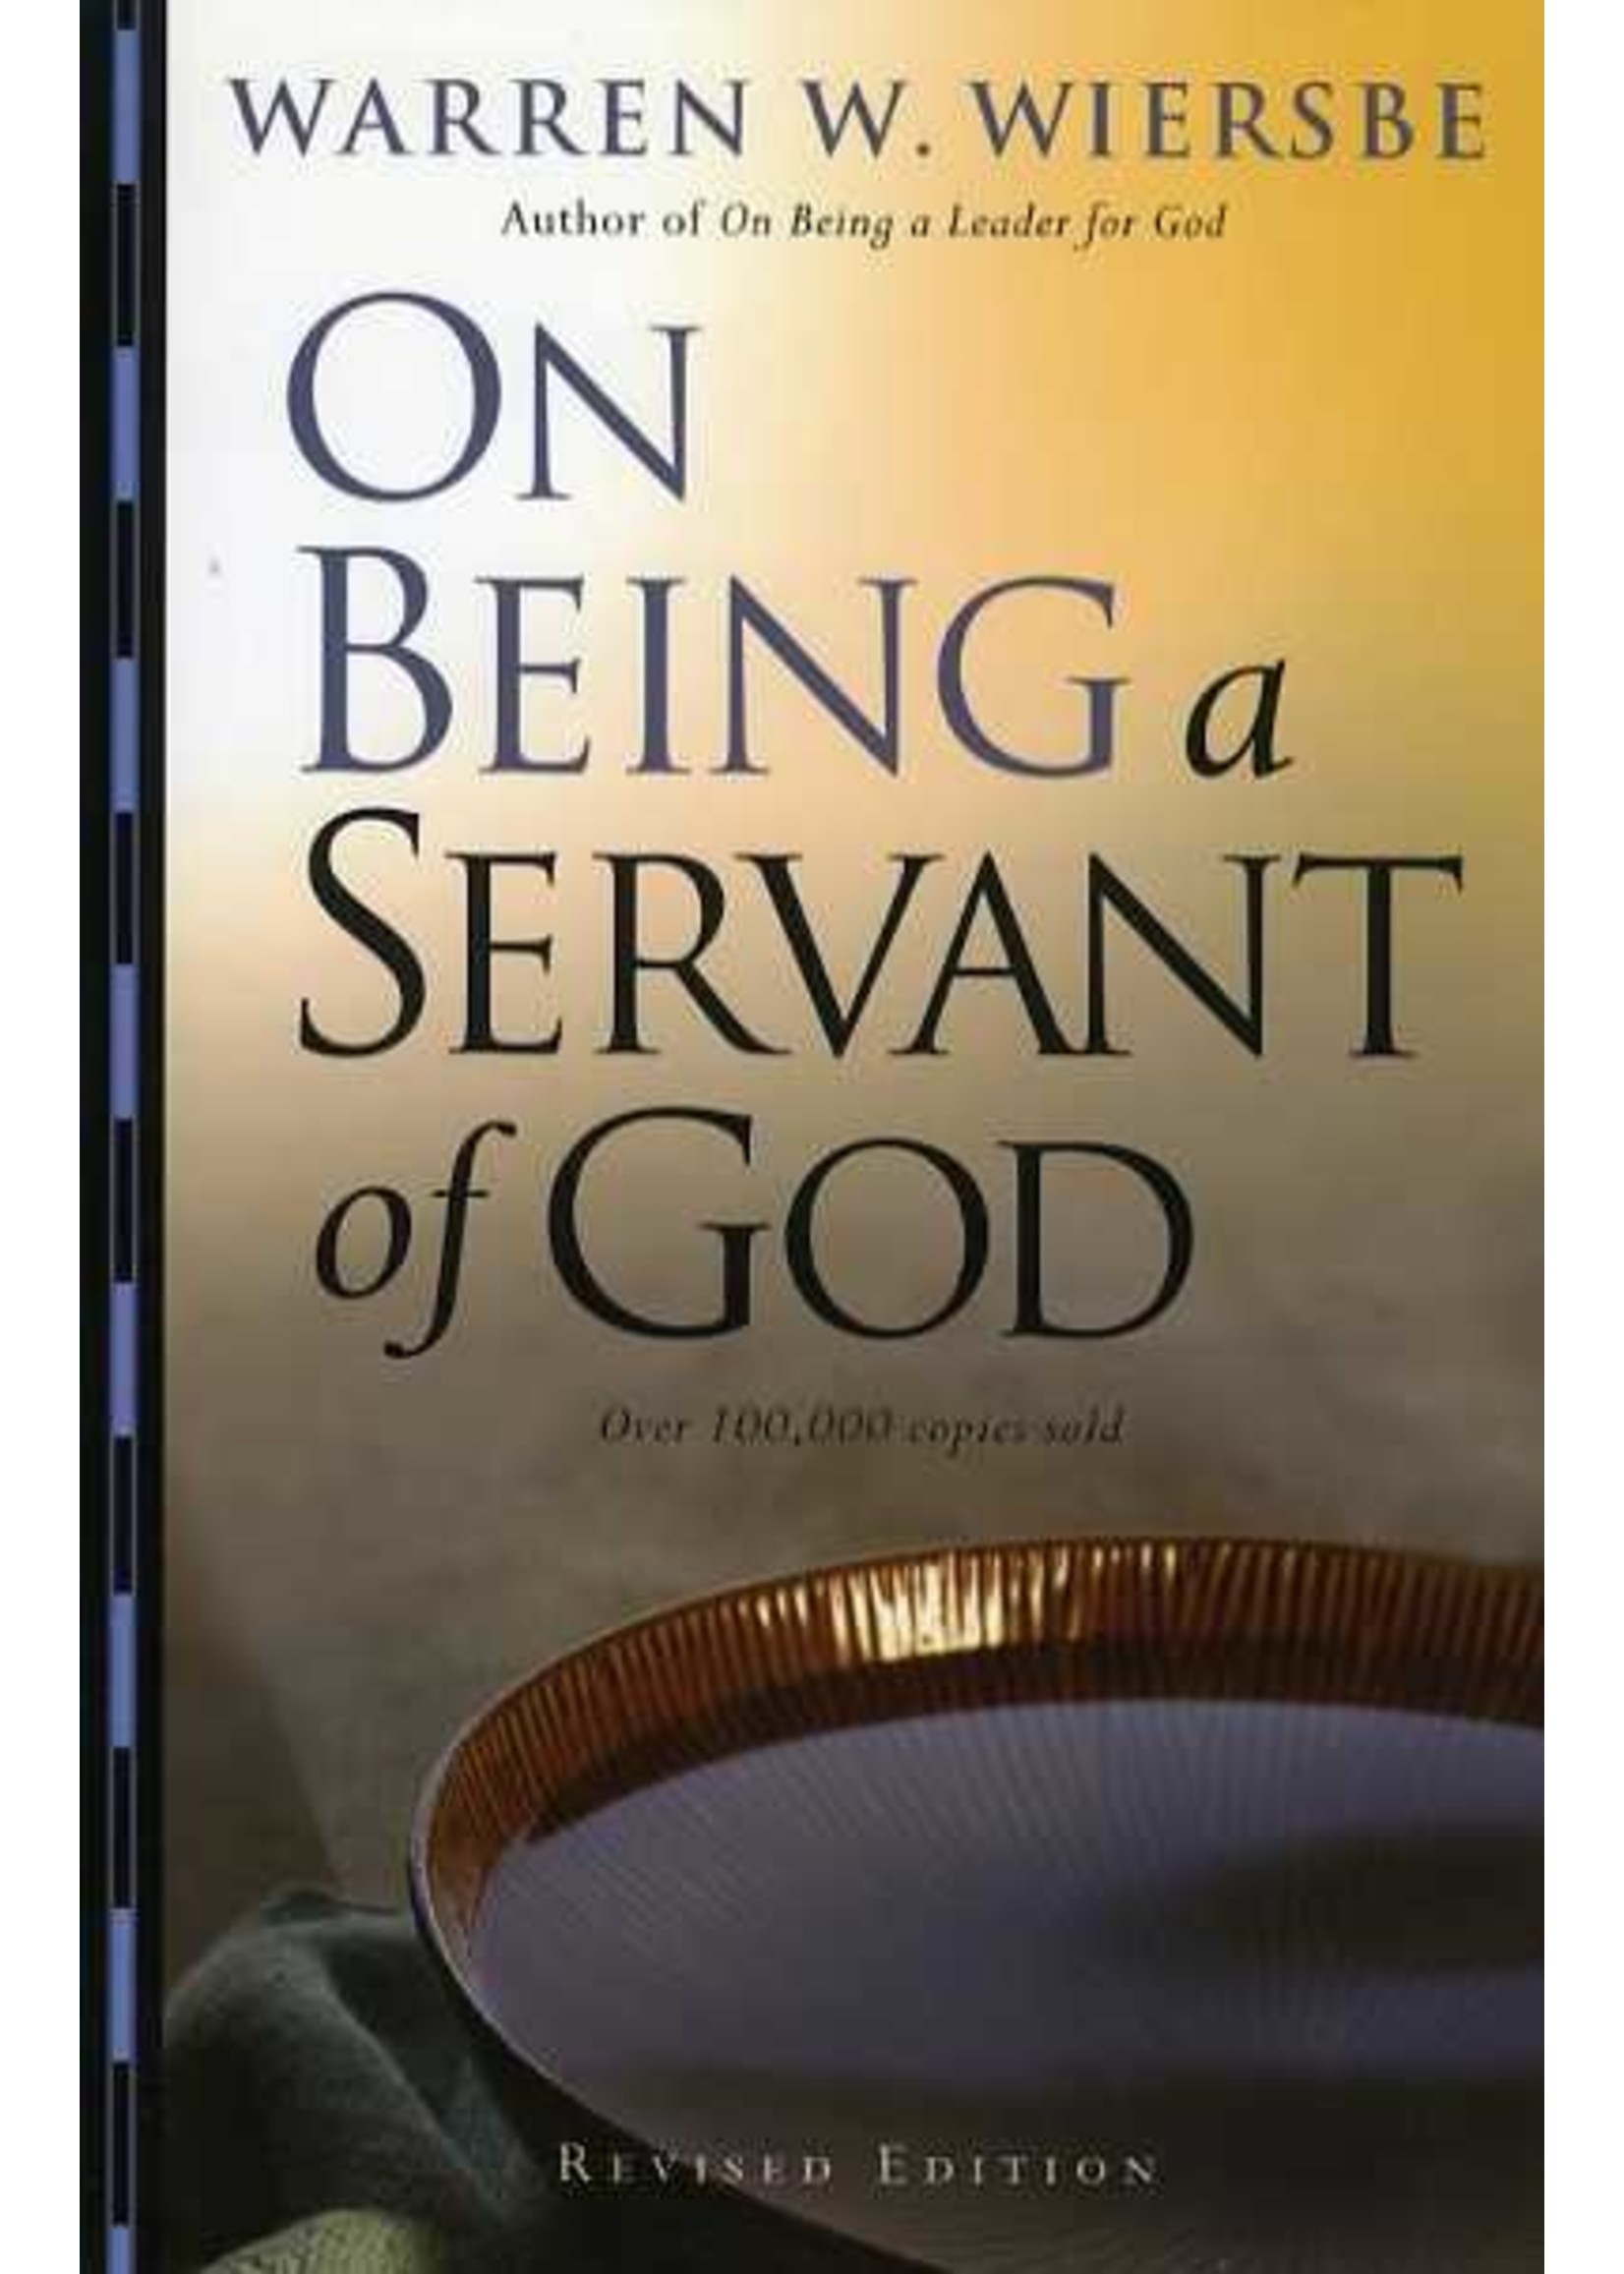 Baker Publishing On Being a Servant of God - Warren Wiersbe